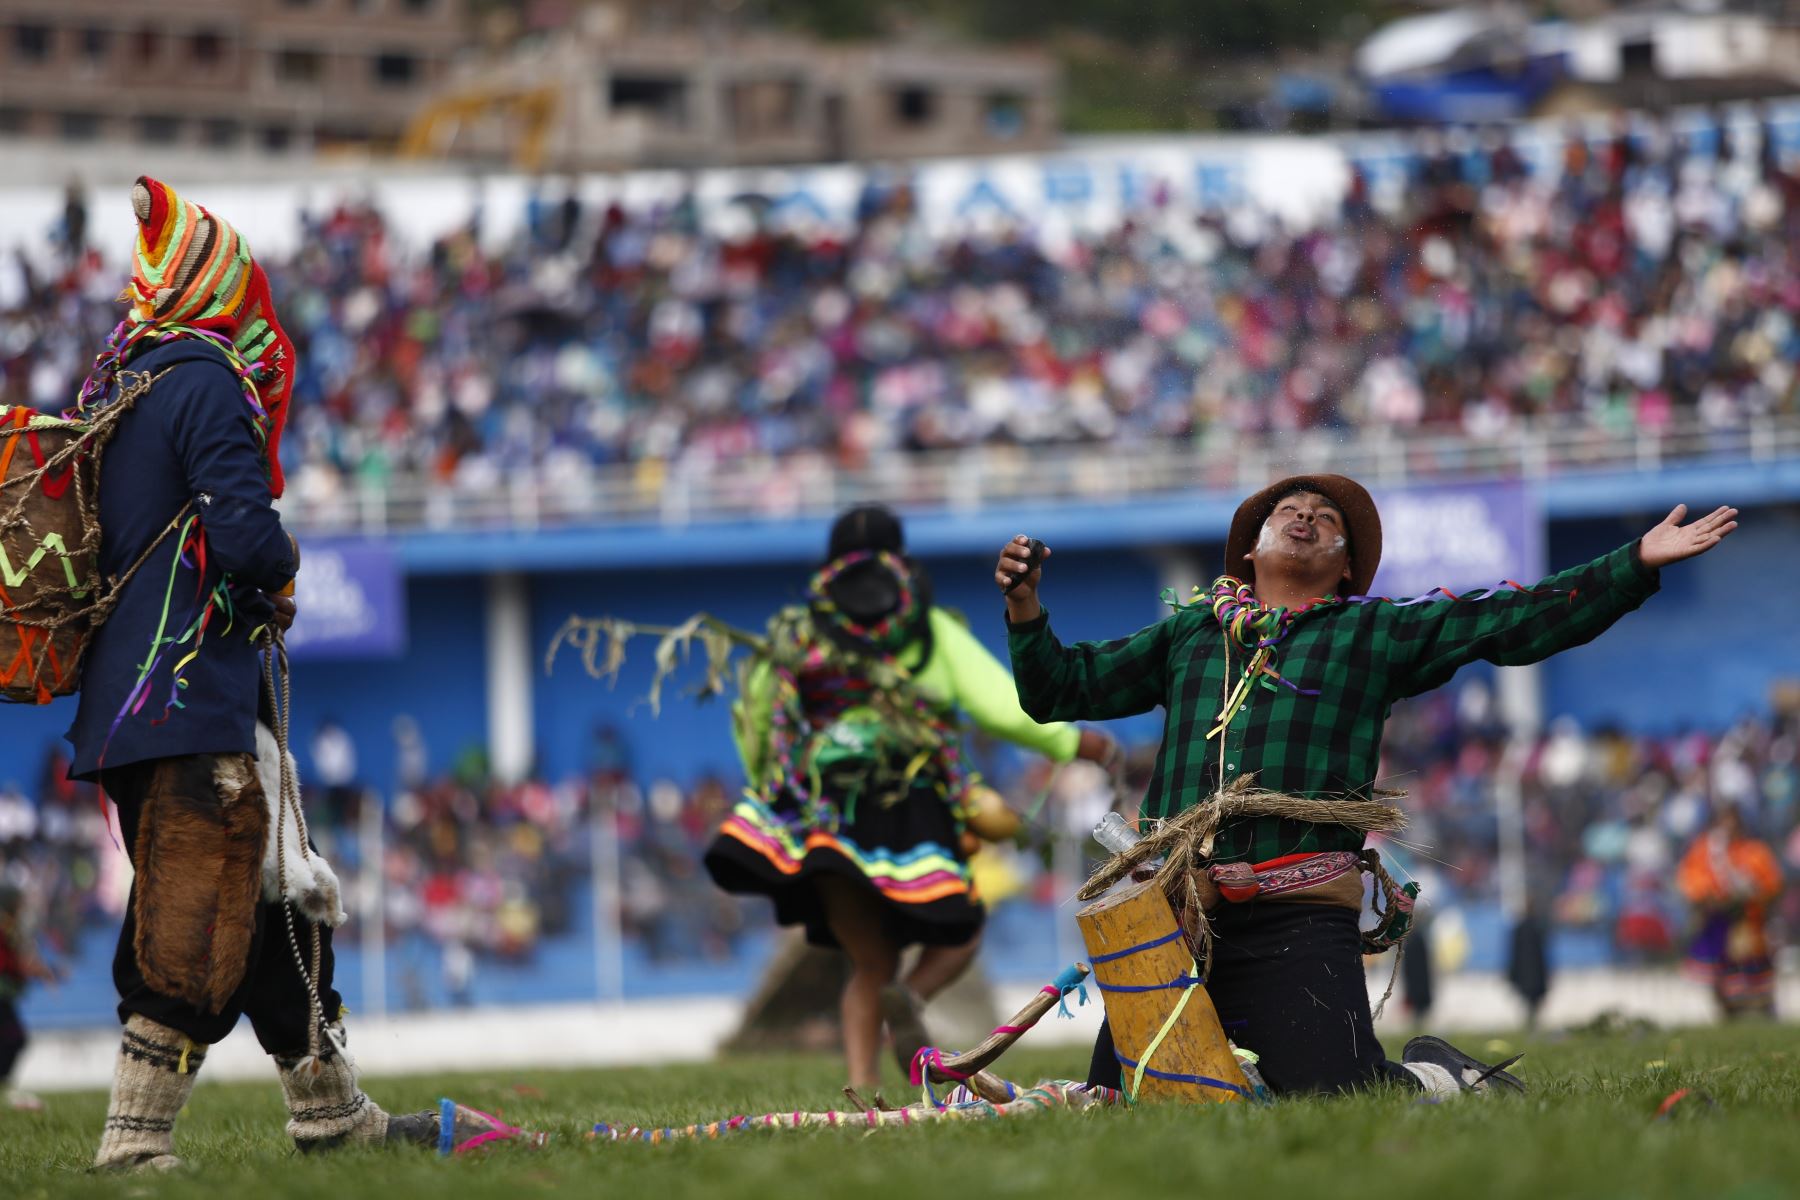 Andahuaylas declara feriados este jueves 8 y viernes para celebrar el Pukllay. Foto: Promperú